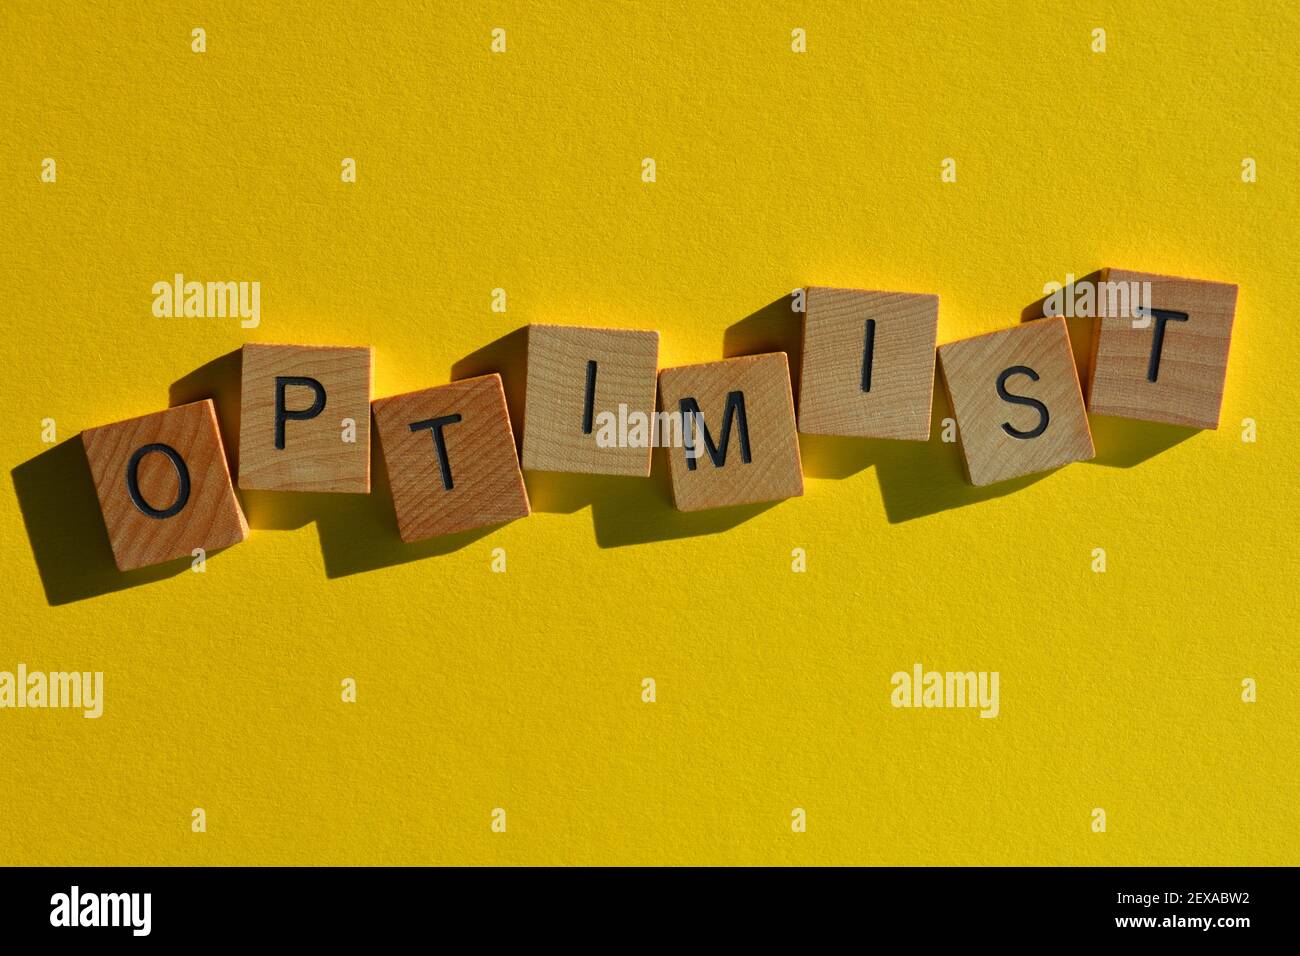 Ottimista, parola in lettere alfabetiche in legno isolato su sfondo giallo brillante Foto Stock